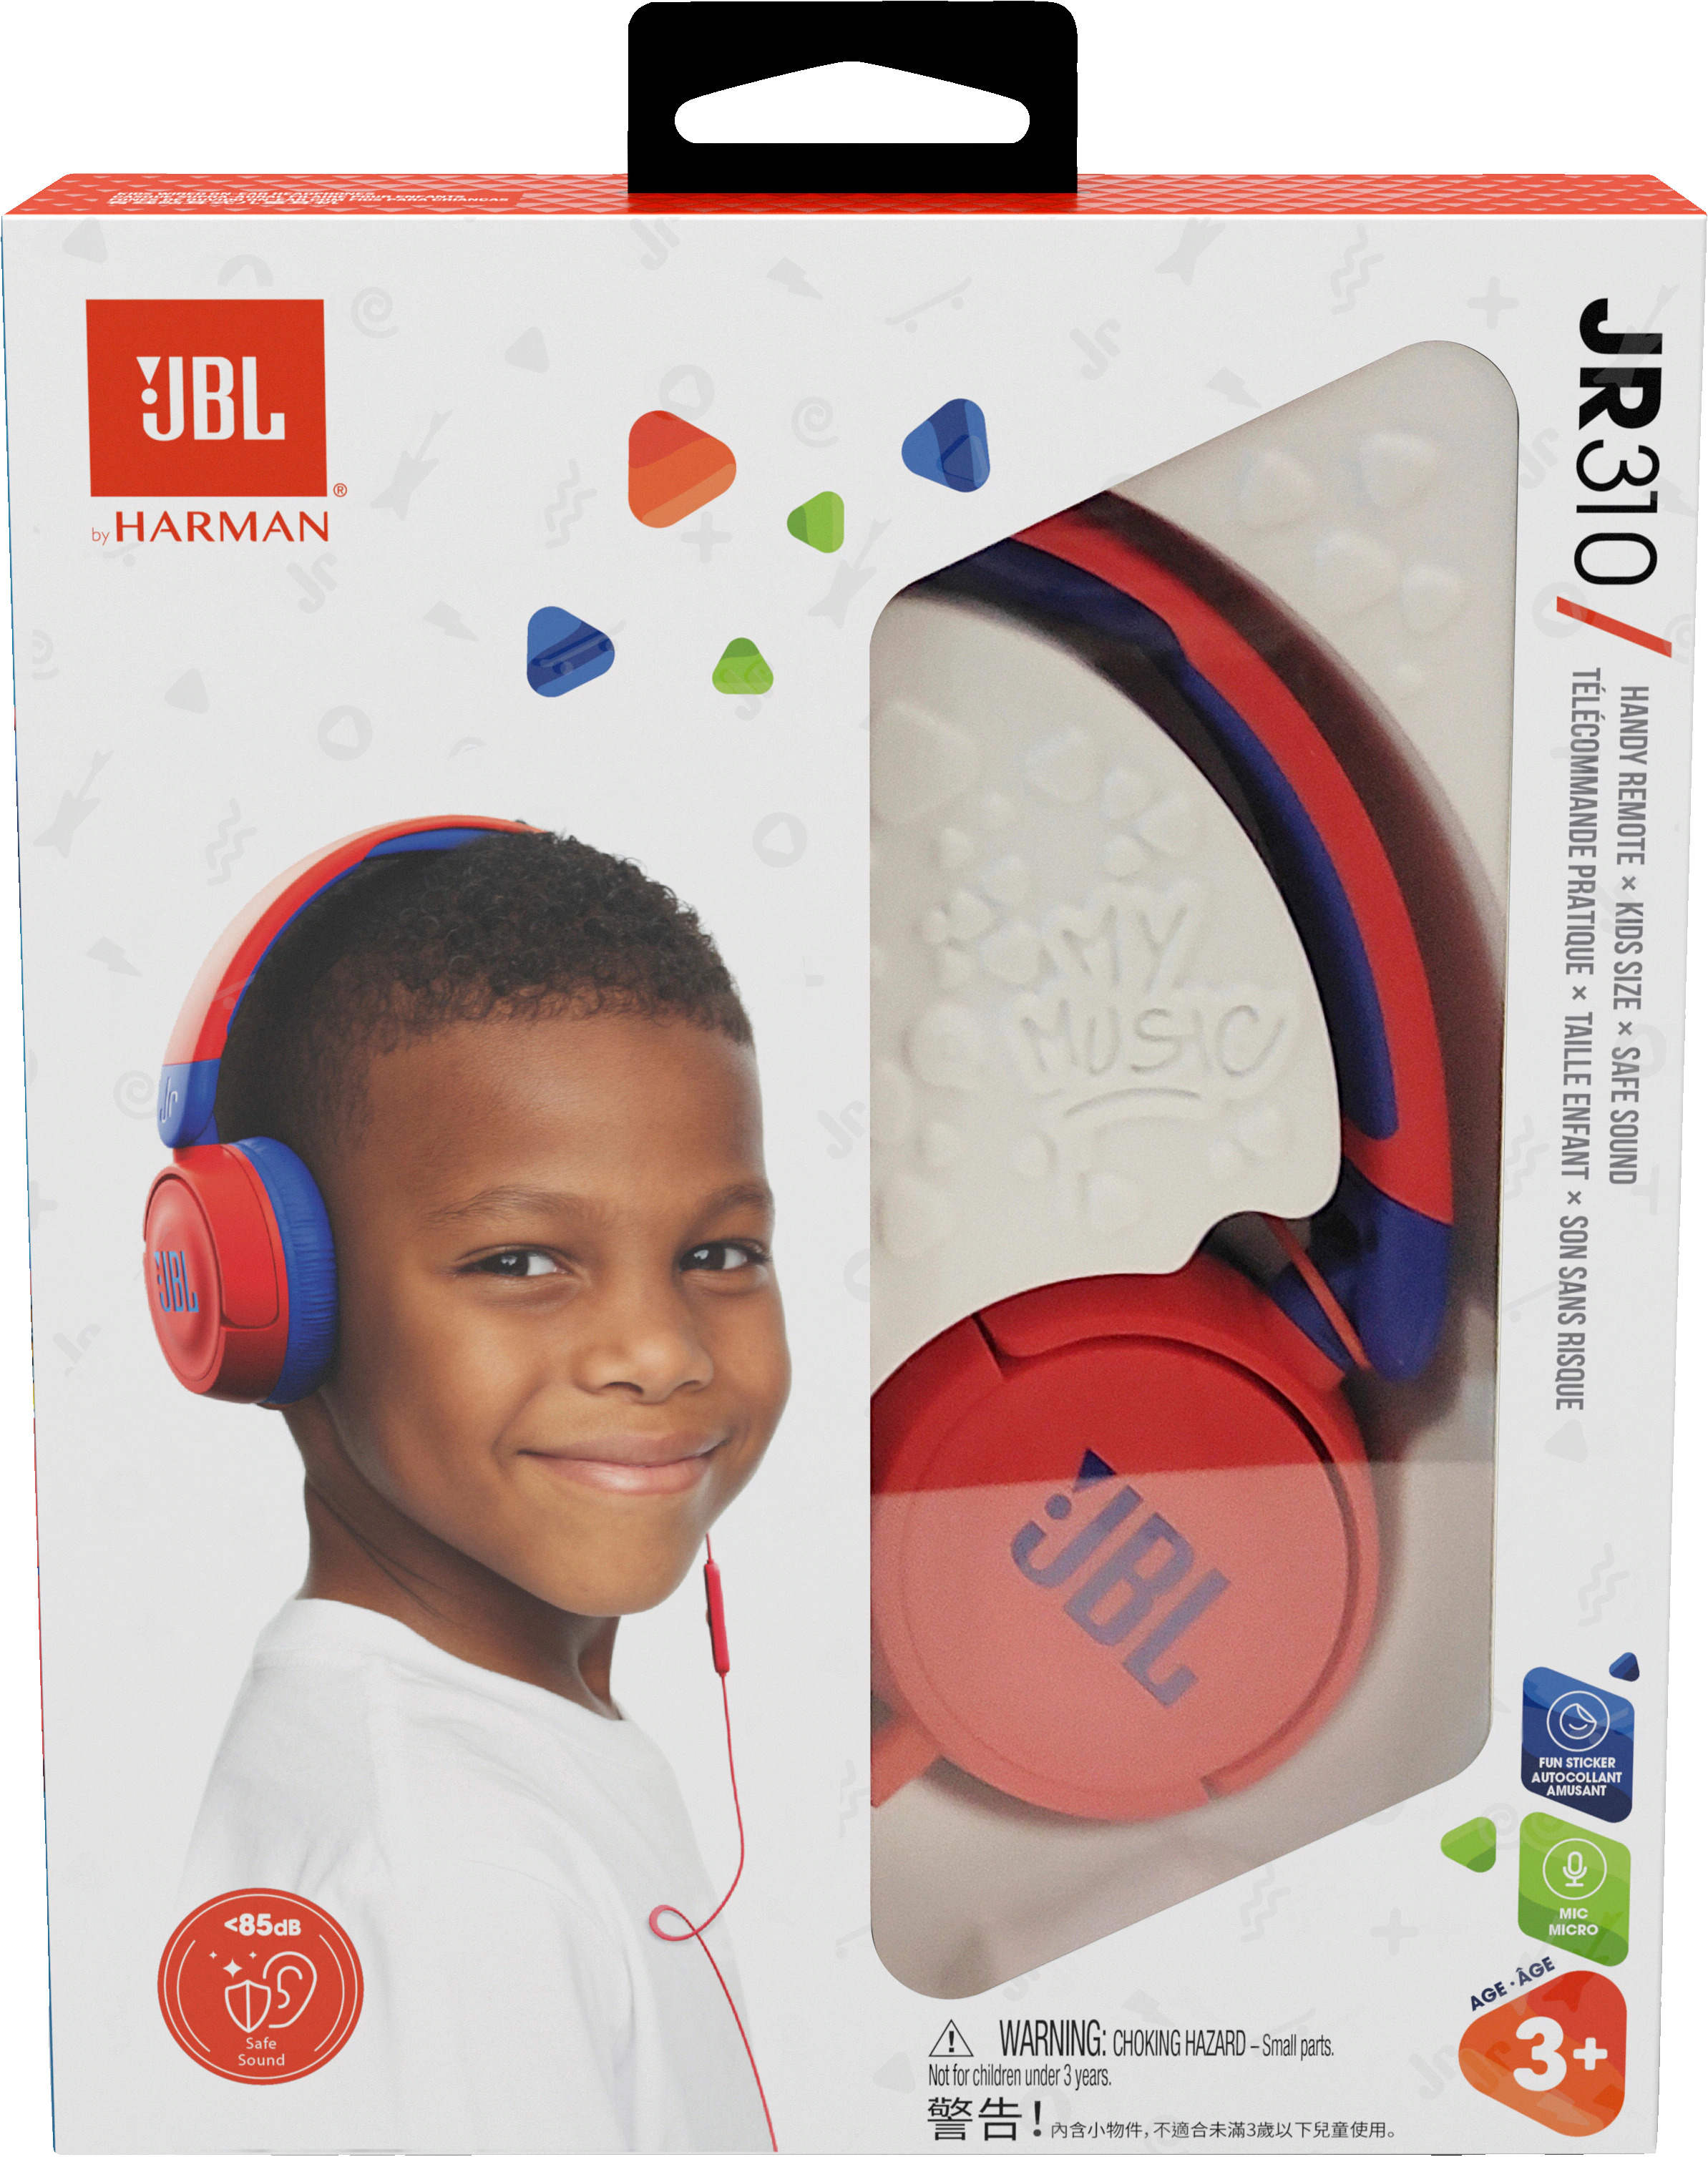 JBL JR310 Kids on-ear Headphones BLUE/RED/PINK | Book